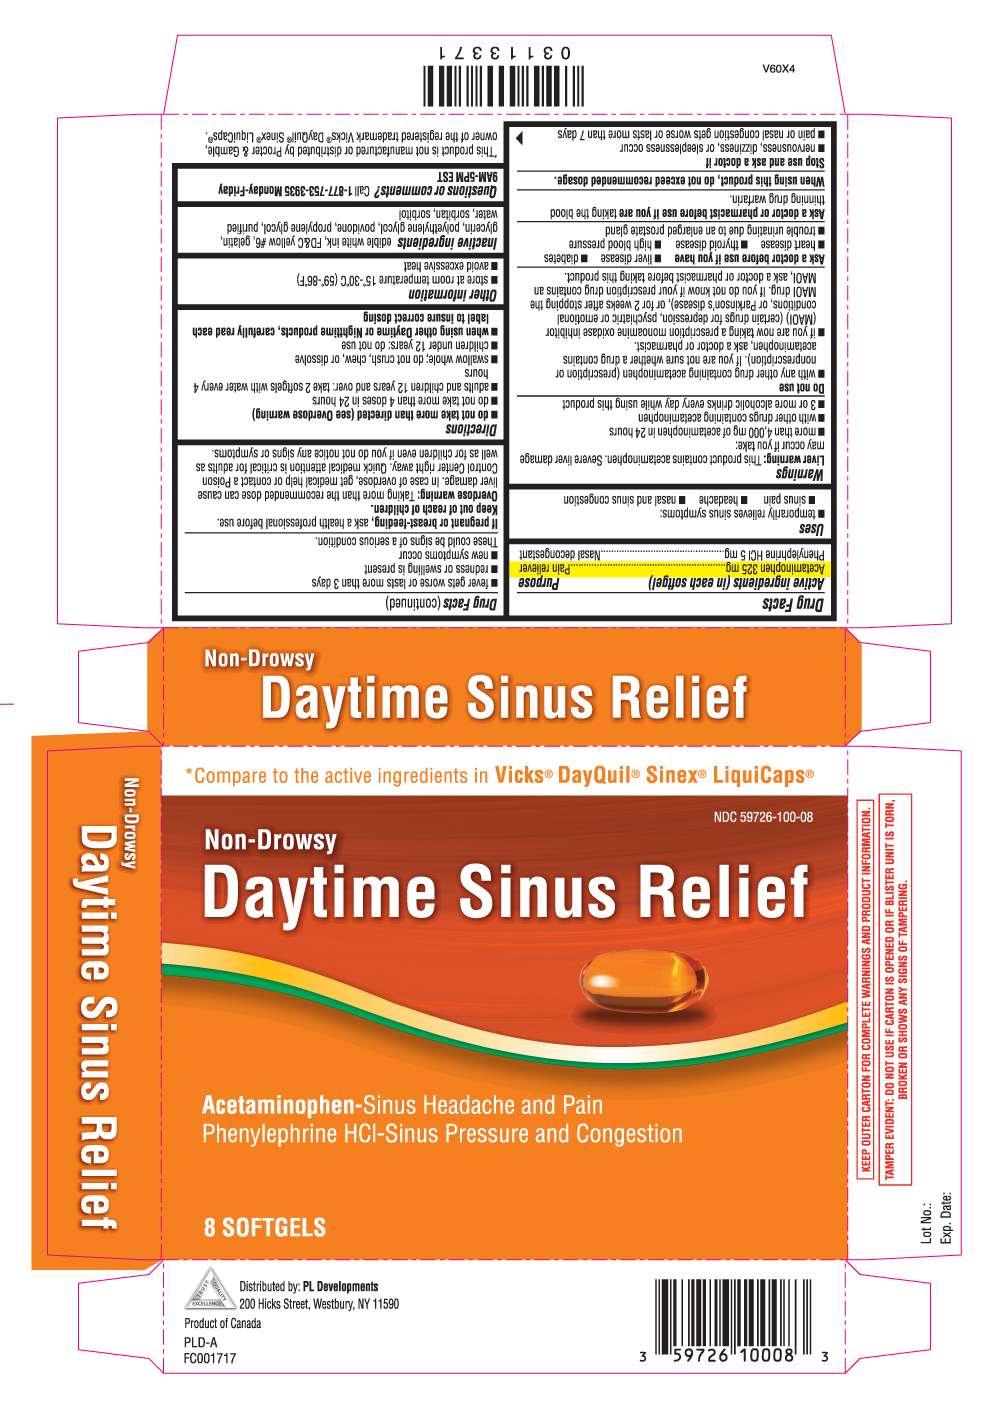 Daytime Sinus Relief